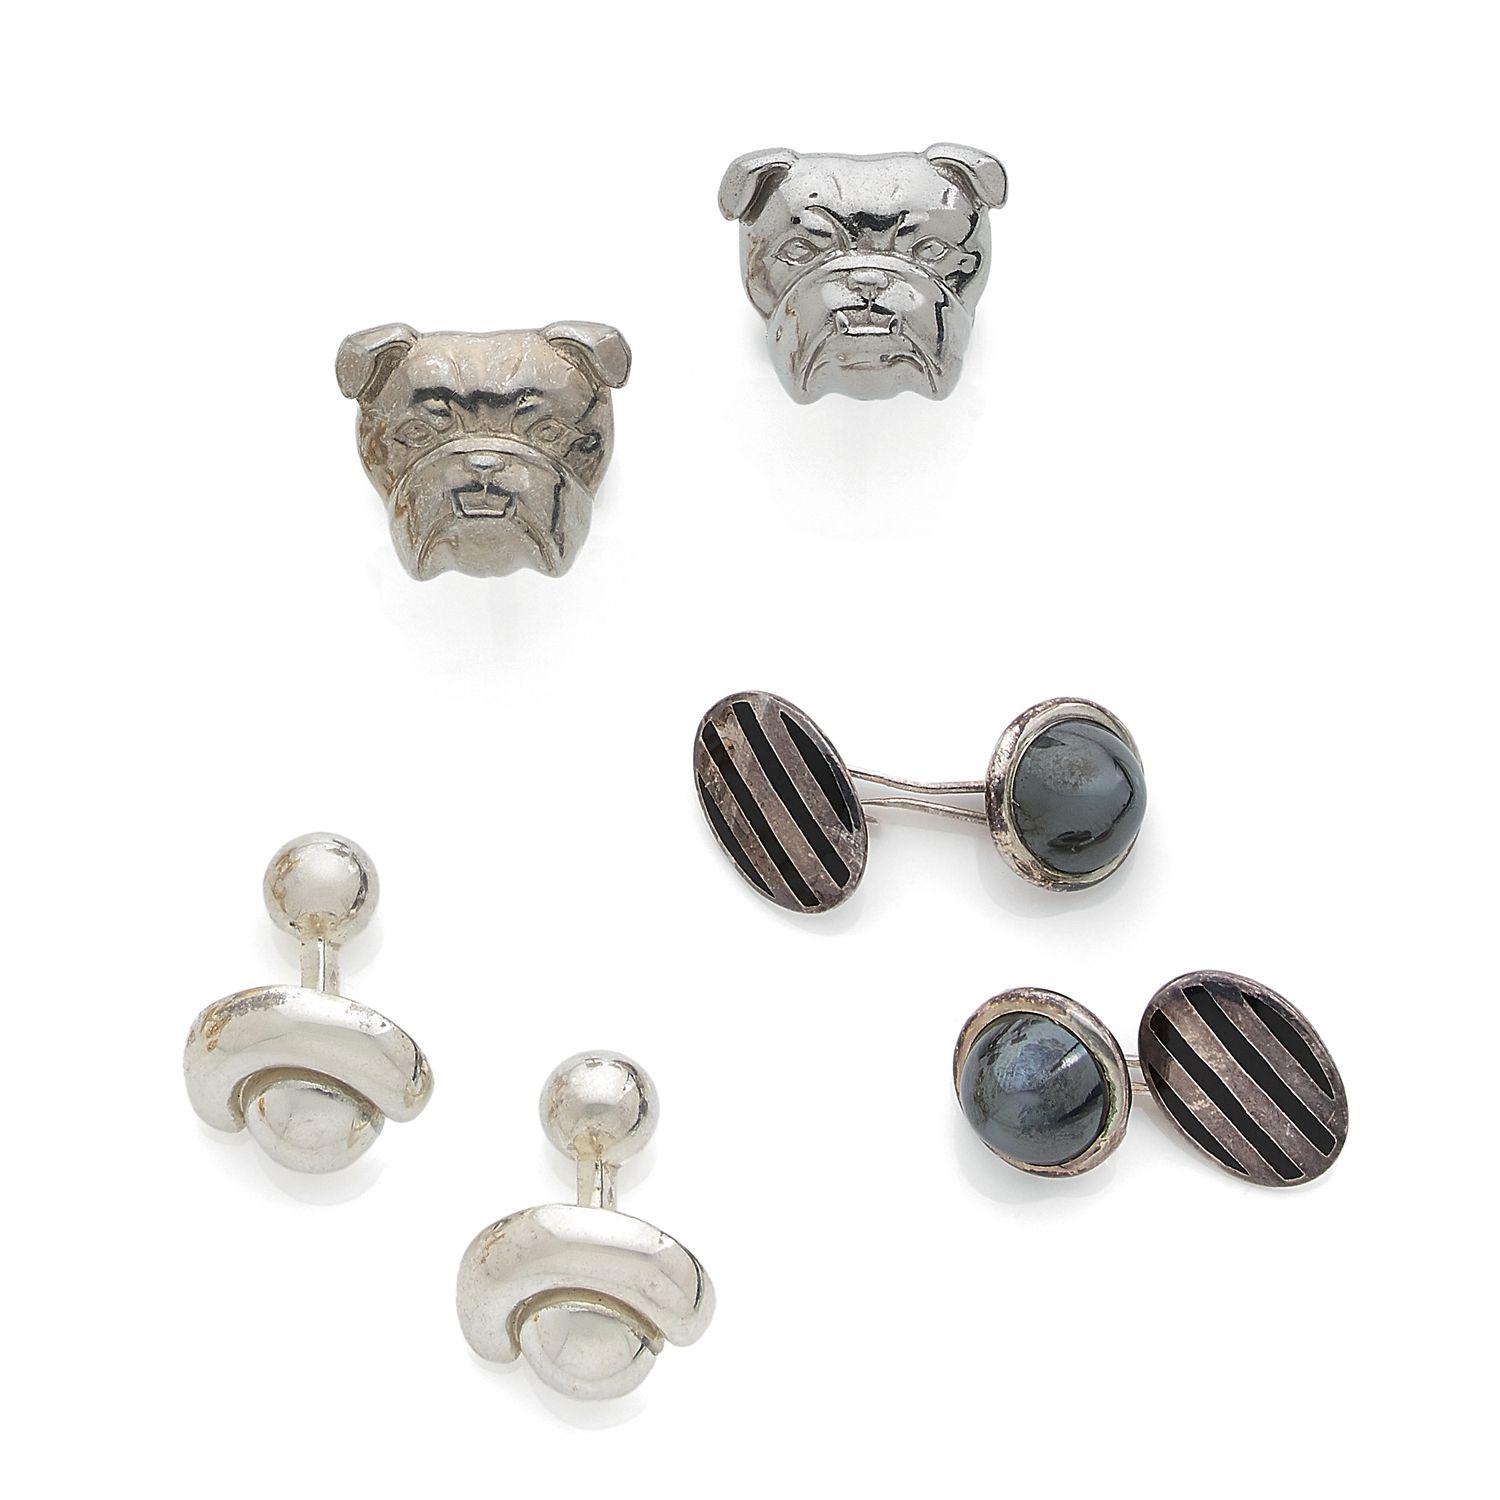 Null Arthus Bertrand

三对银质袖扣（925‰）："牛头"、"半月 "和 "椭圆"，由涅罗银和凸面赤铁矿制成。

毛重 : 60,8 g